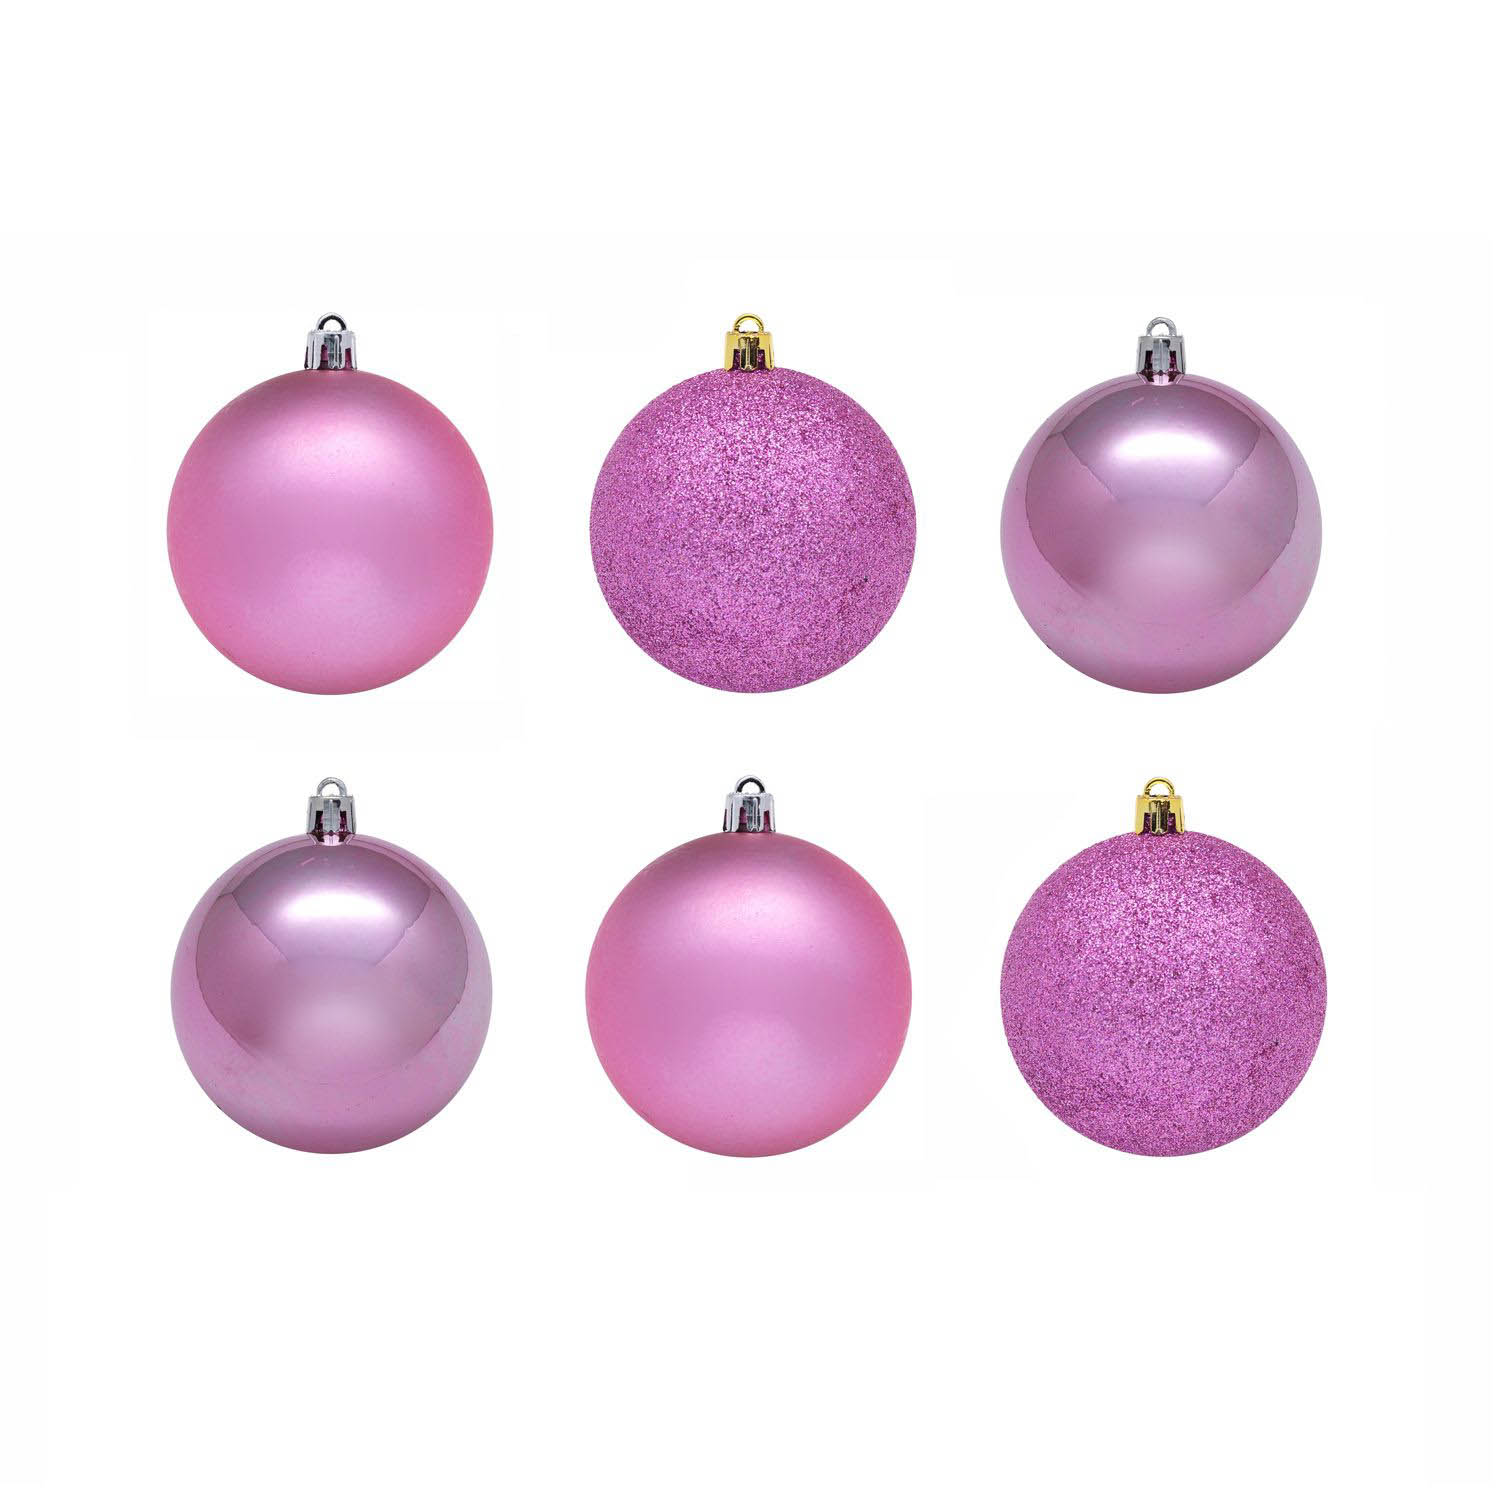 Елочные шарики Deshawn Цвет: Розовый (8 см - 6 шт), размер 8 см - 6 шт snw225080 Елочные шарики Deshawn Цвет: Розовый (8 см - 6 шт) - фото 1